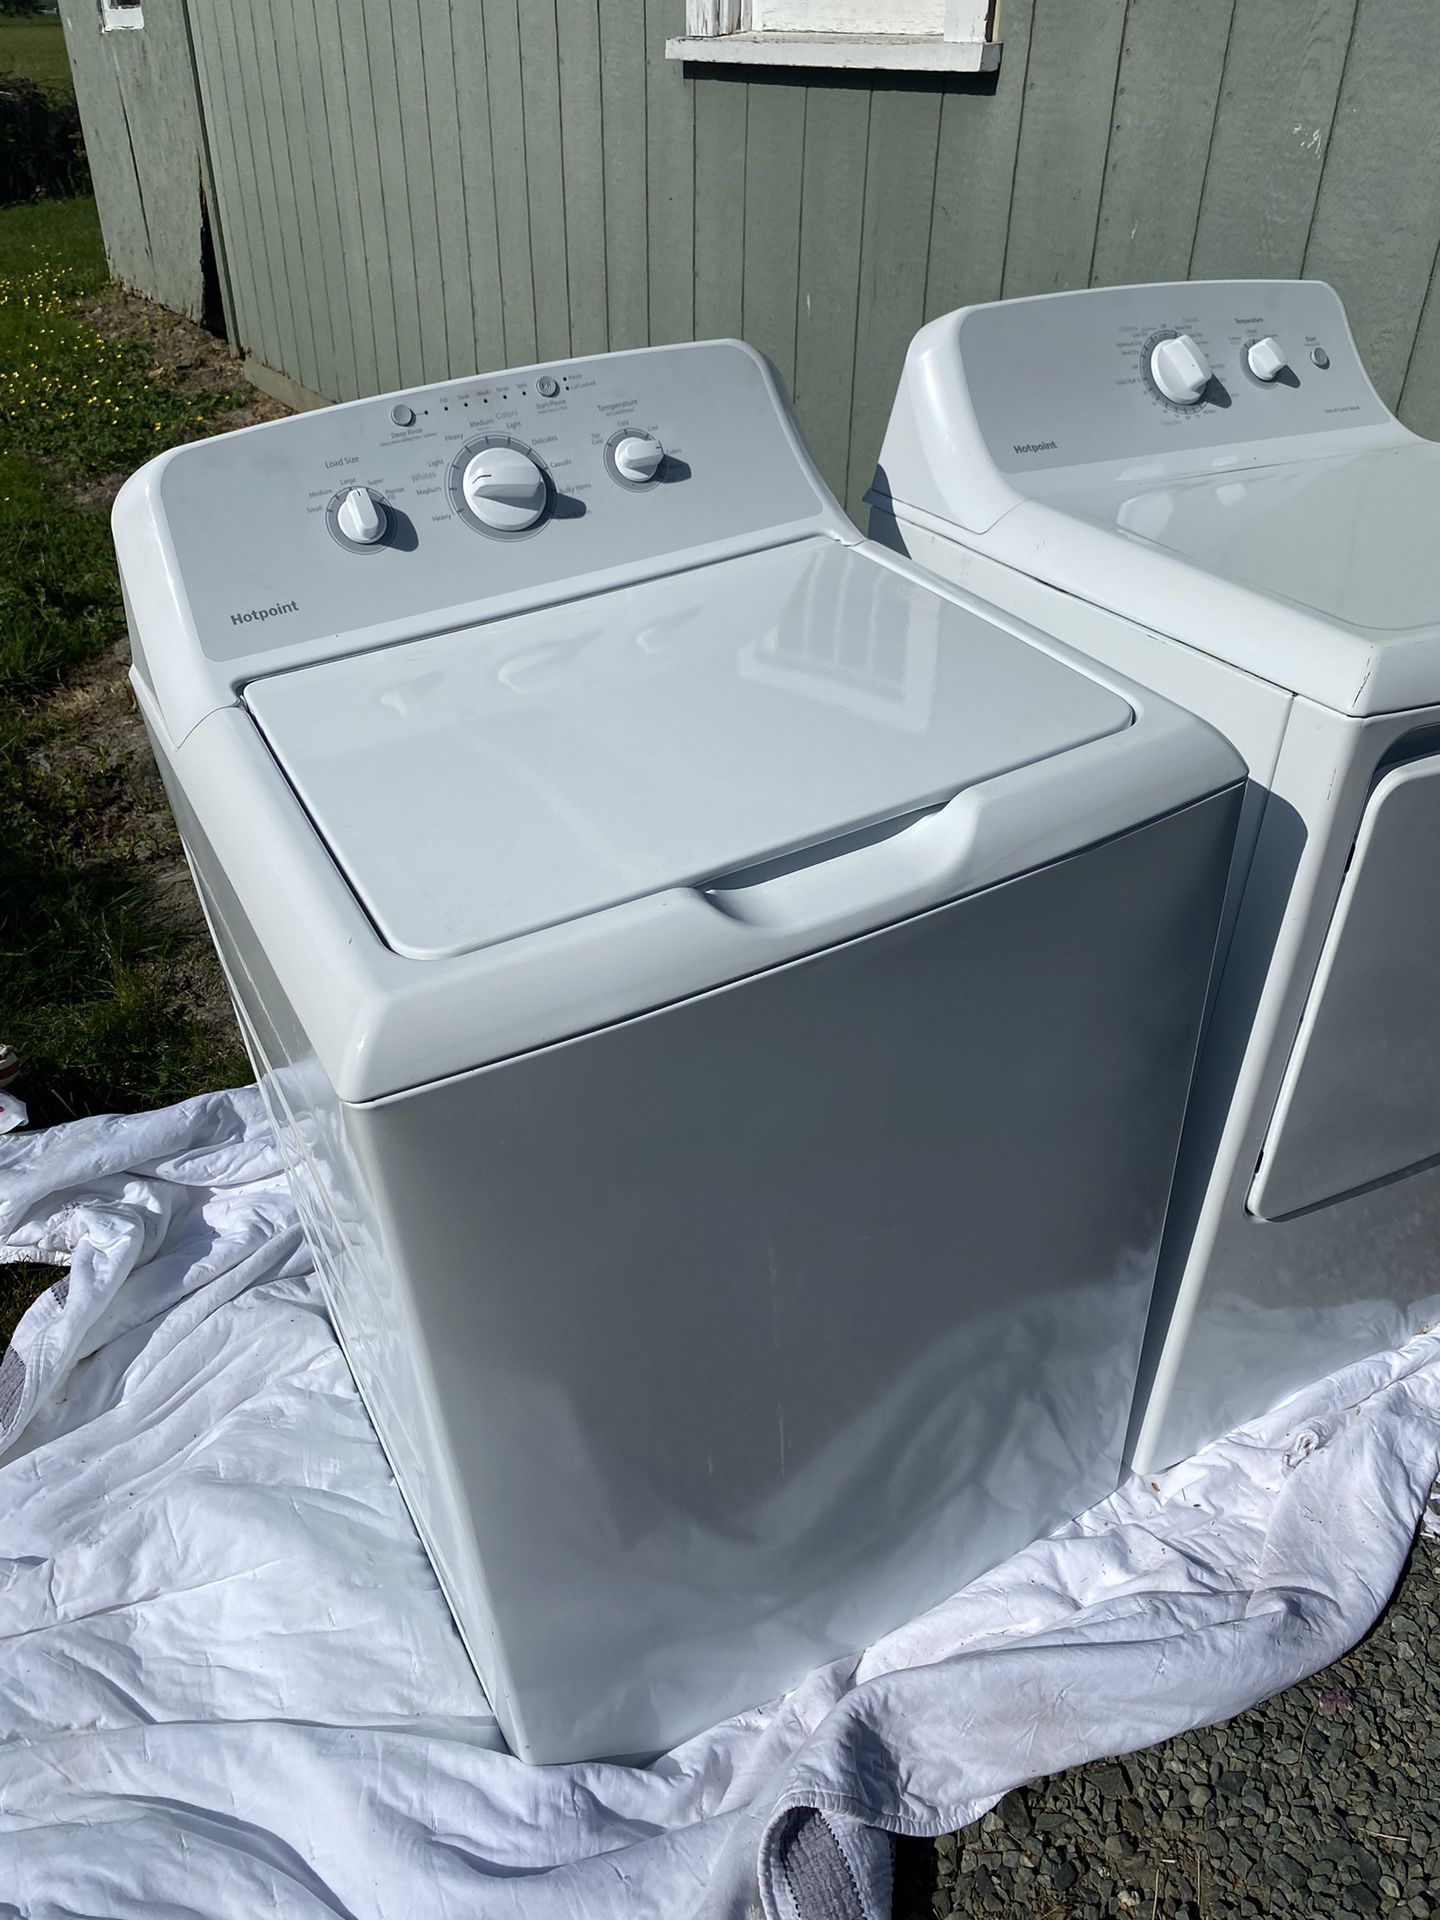 Splendide 2000 marine/rv all in one washer/dryer for Sale in Mountlake  Terrace, WA - OfferUp